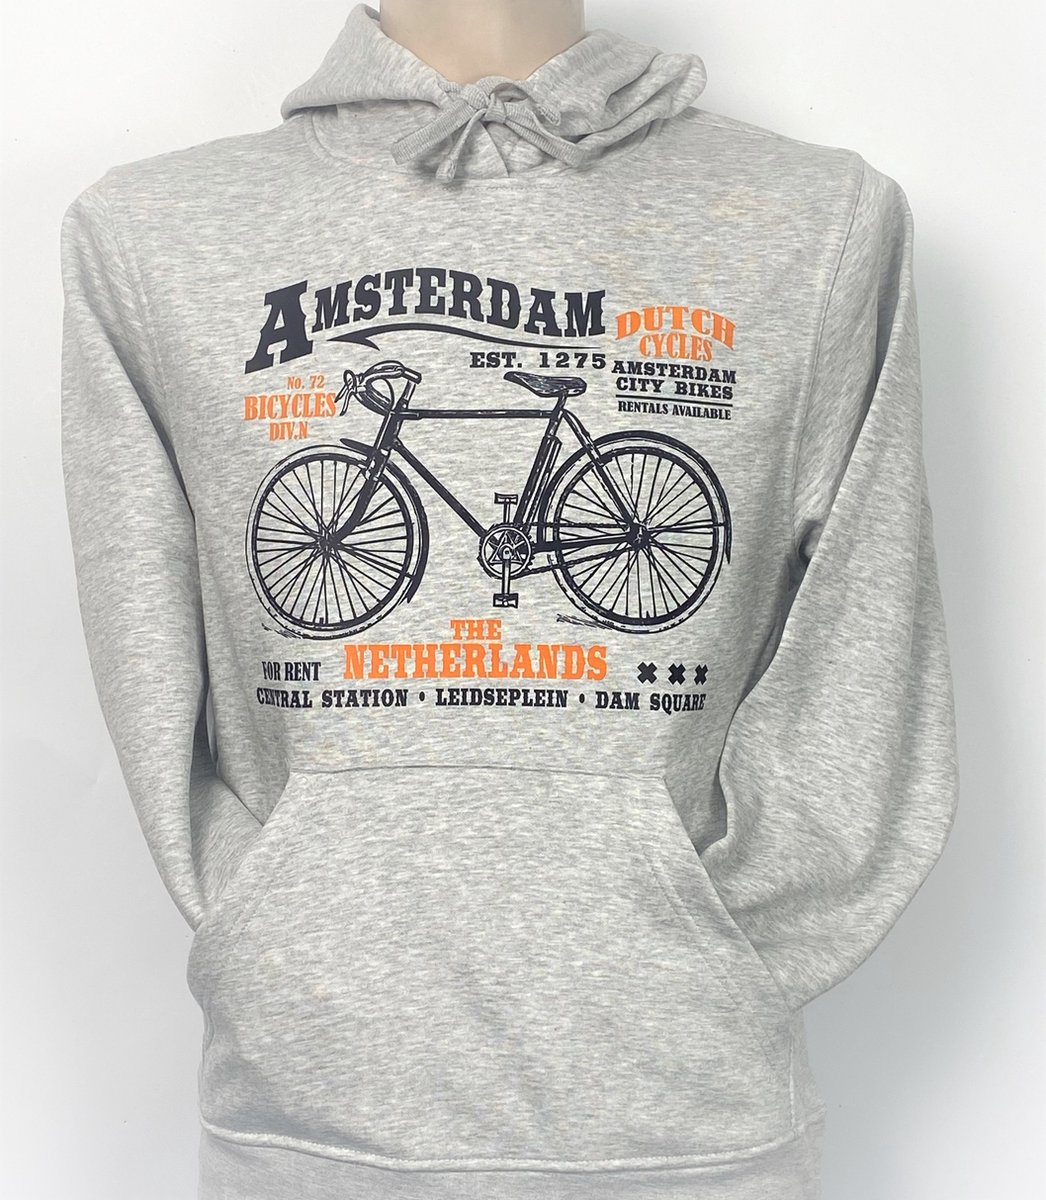 Hooded Sweater - Met Trekkoord - Capuchon - Chill - Trui - Vest - met capuchon - Outdoor - Fiets - 1275 -Amsterdam - Bike Town - Travel - Dam Square - City Bike - Sport Grey - Maat XL